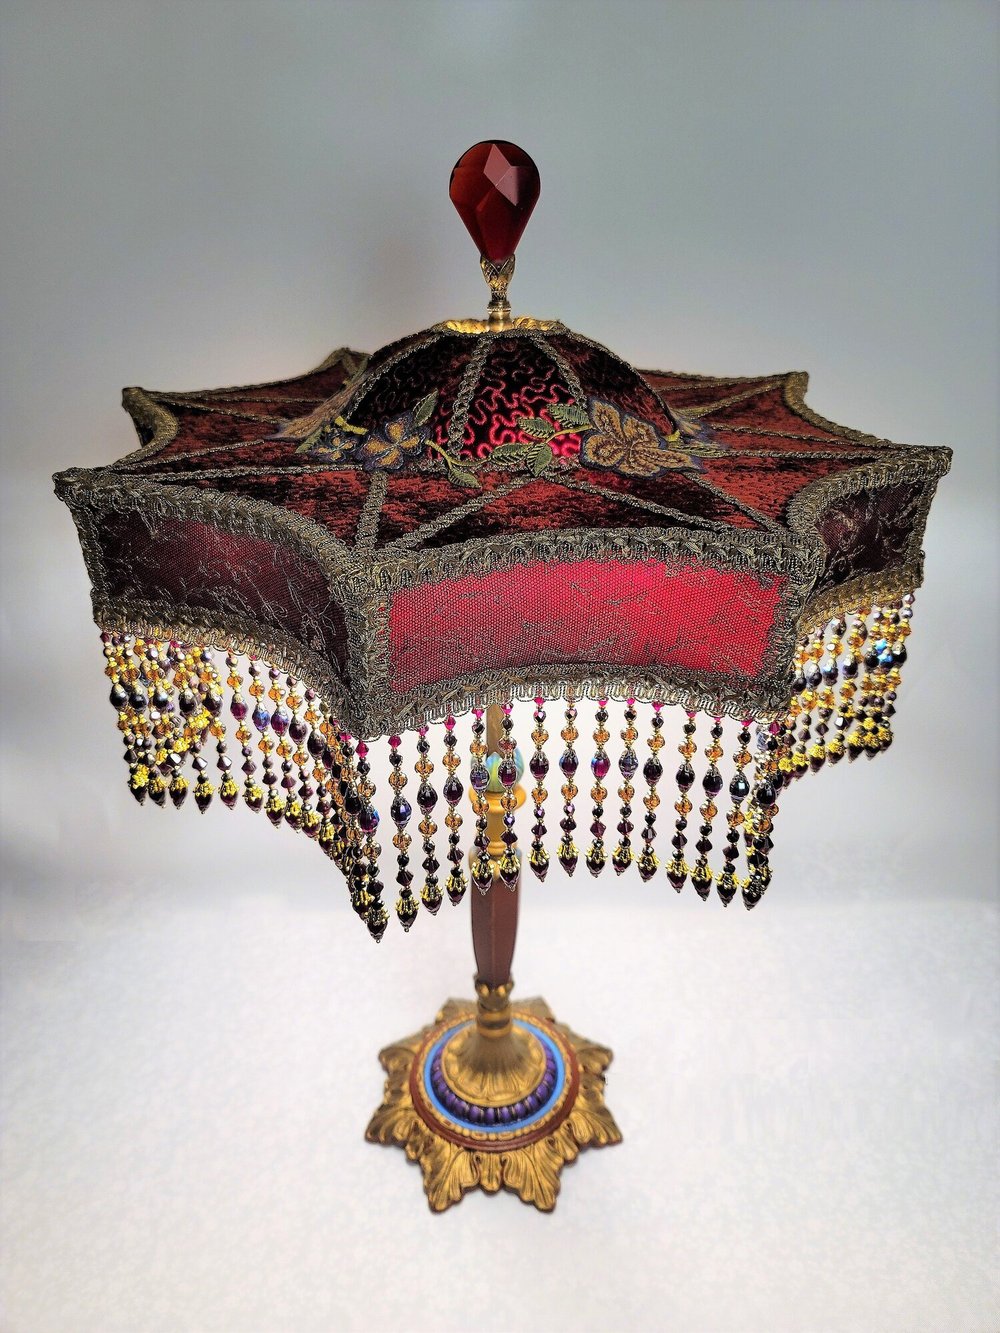 Antagonisme Bemyndige solsikke Elegance Lamps - Antique Lamps & Handcrafted Victorian Lampshades